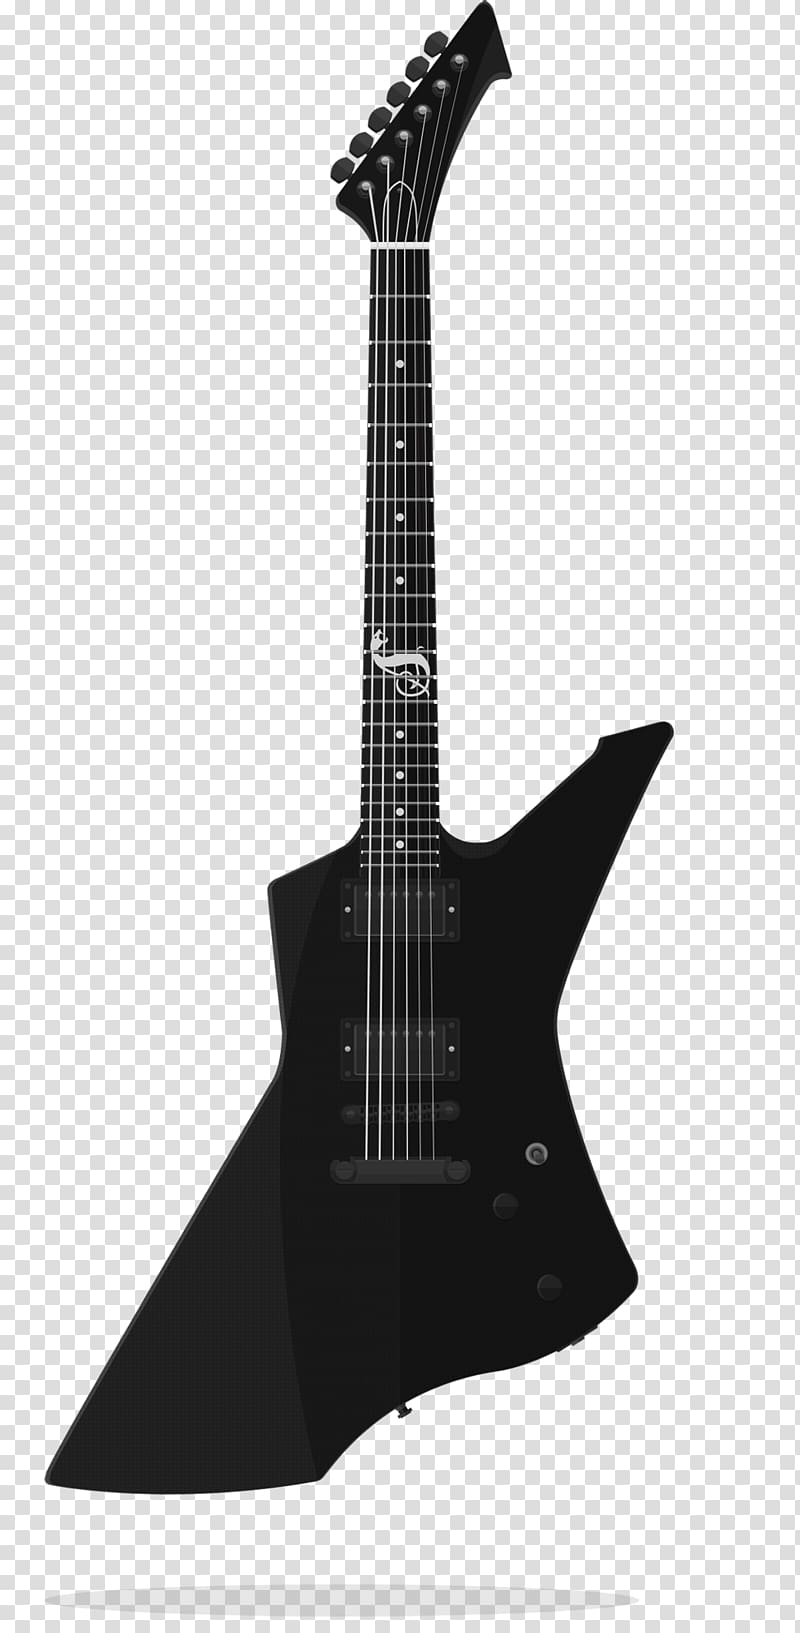 Amazon.com Electric guitar ESP James Hetfield ESP Guitars, electric guitar transparent background PNG clipart